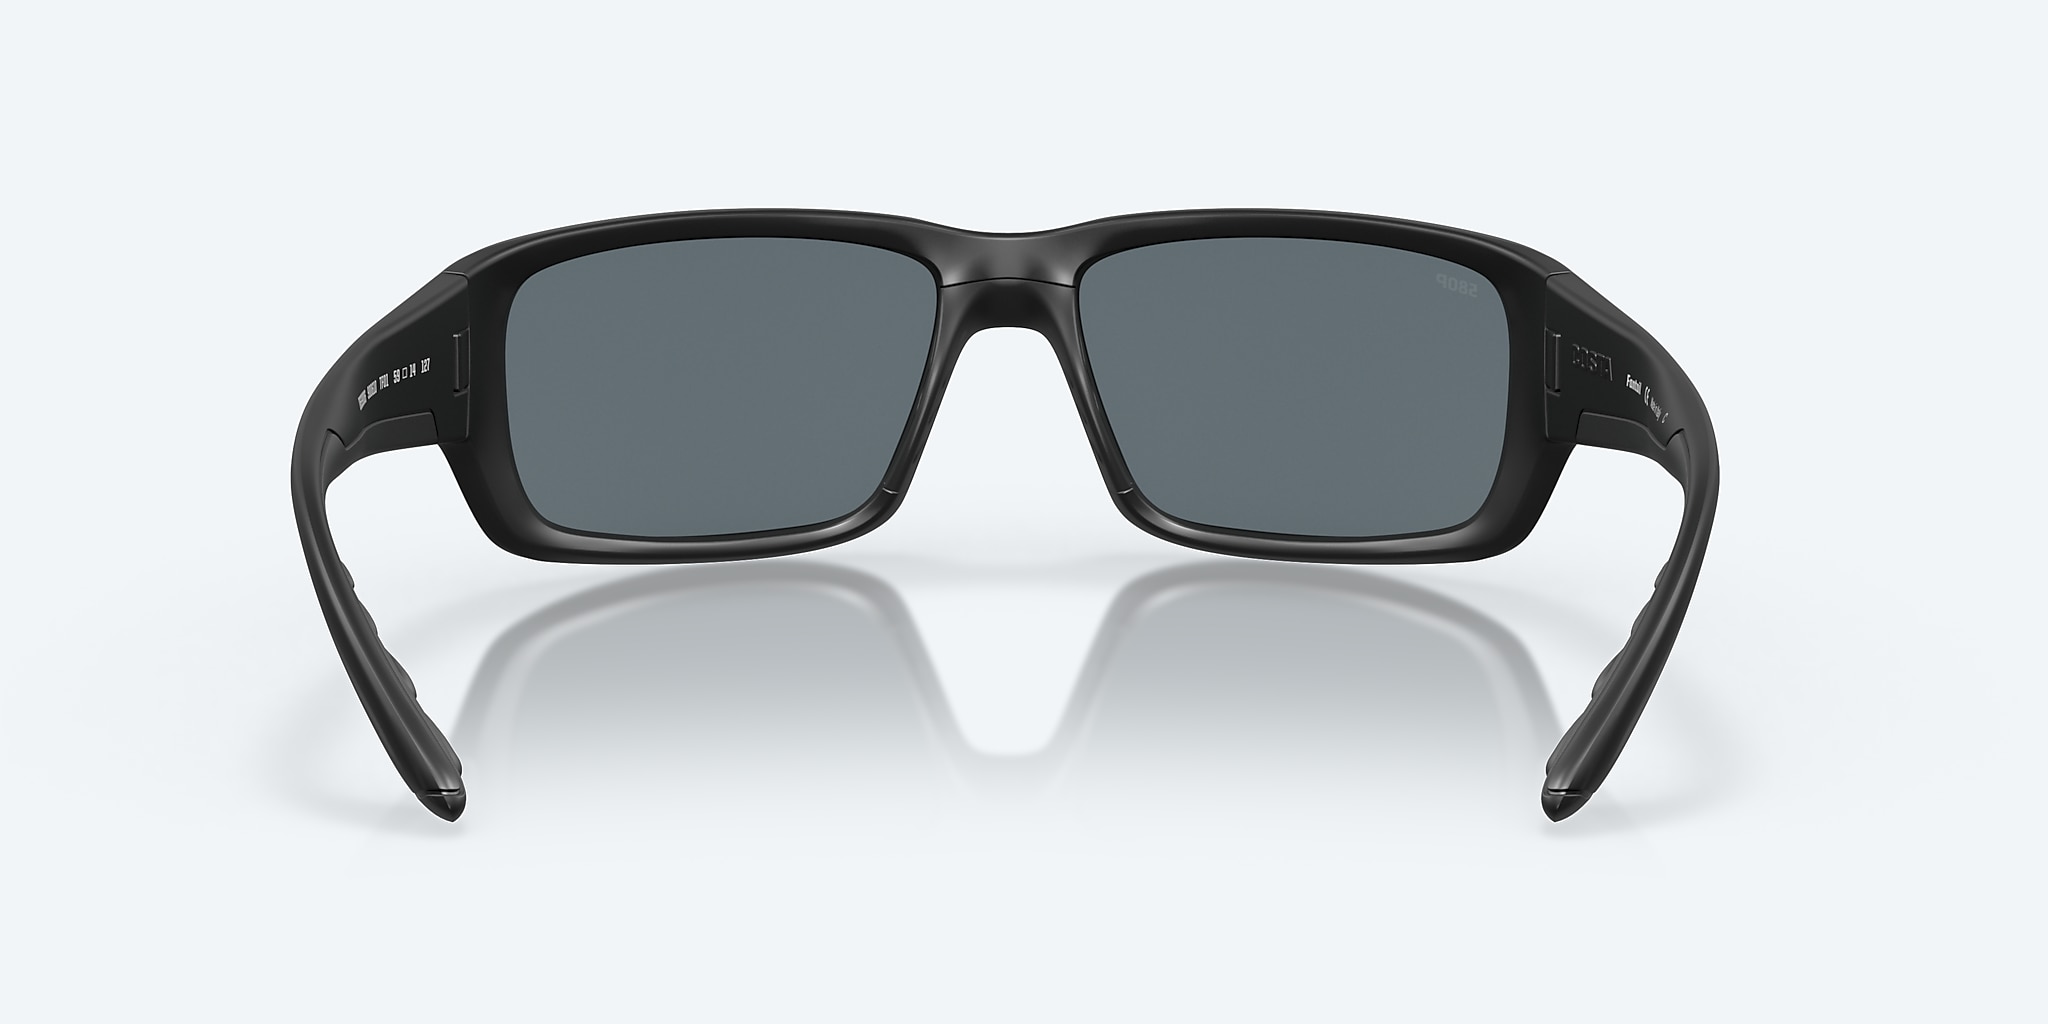 Fantail Polarized Sunglasses in Blue Mirror | Costa Del Mar®